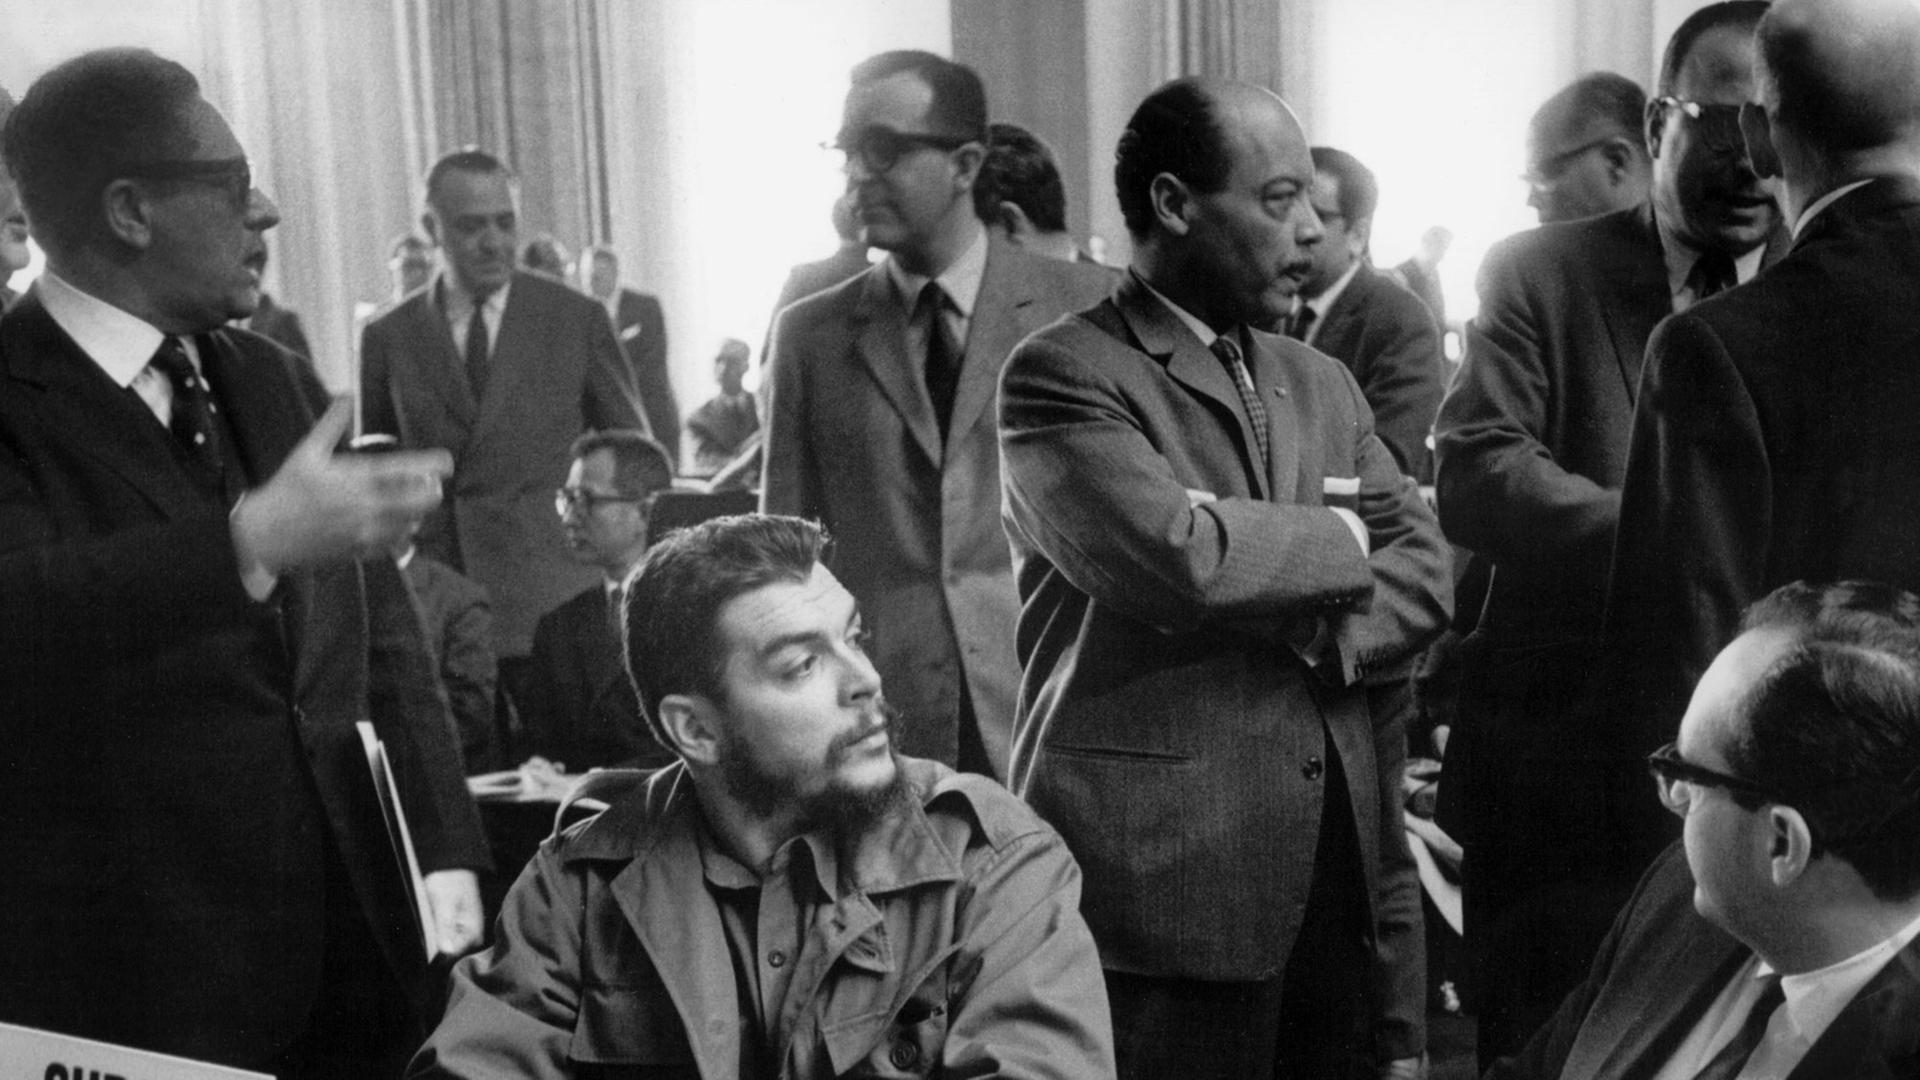 Der kubanische Industrieminister Ernesto "Che" Guevara kritisierte 1964 vor der Welthandelskonferenz in Genf die "imperialistischen" Länder für die Situation in den Entwicklungsländern.